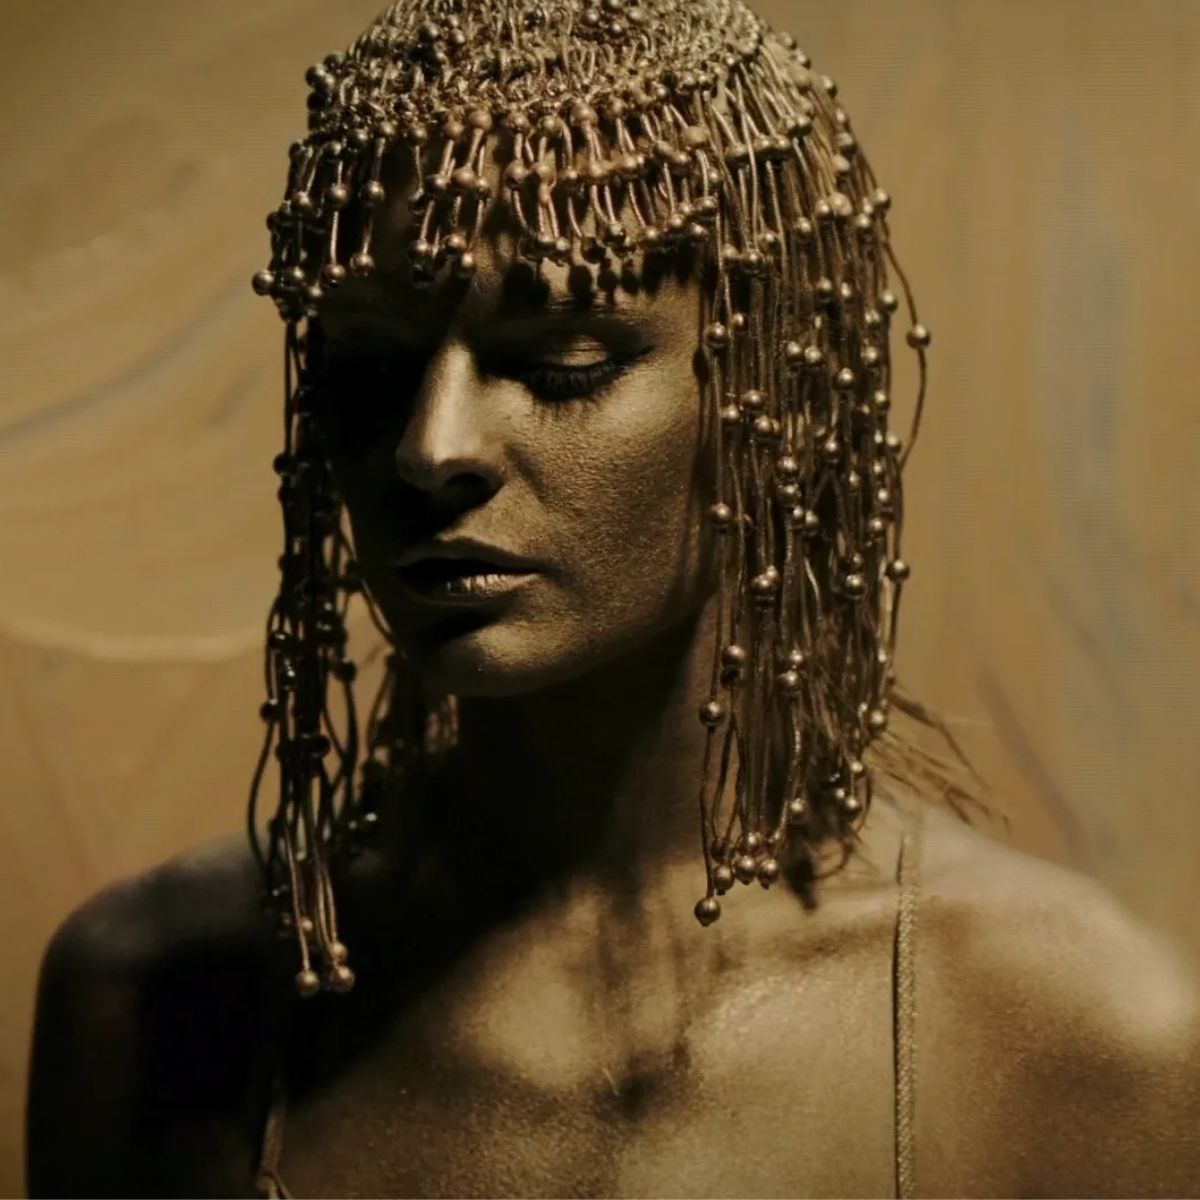 Image de la chanteuse Dolores O'Riordan pour le clip de The Cranberries "Zombie".